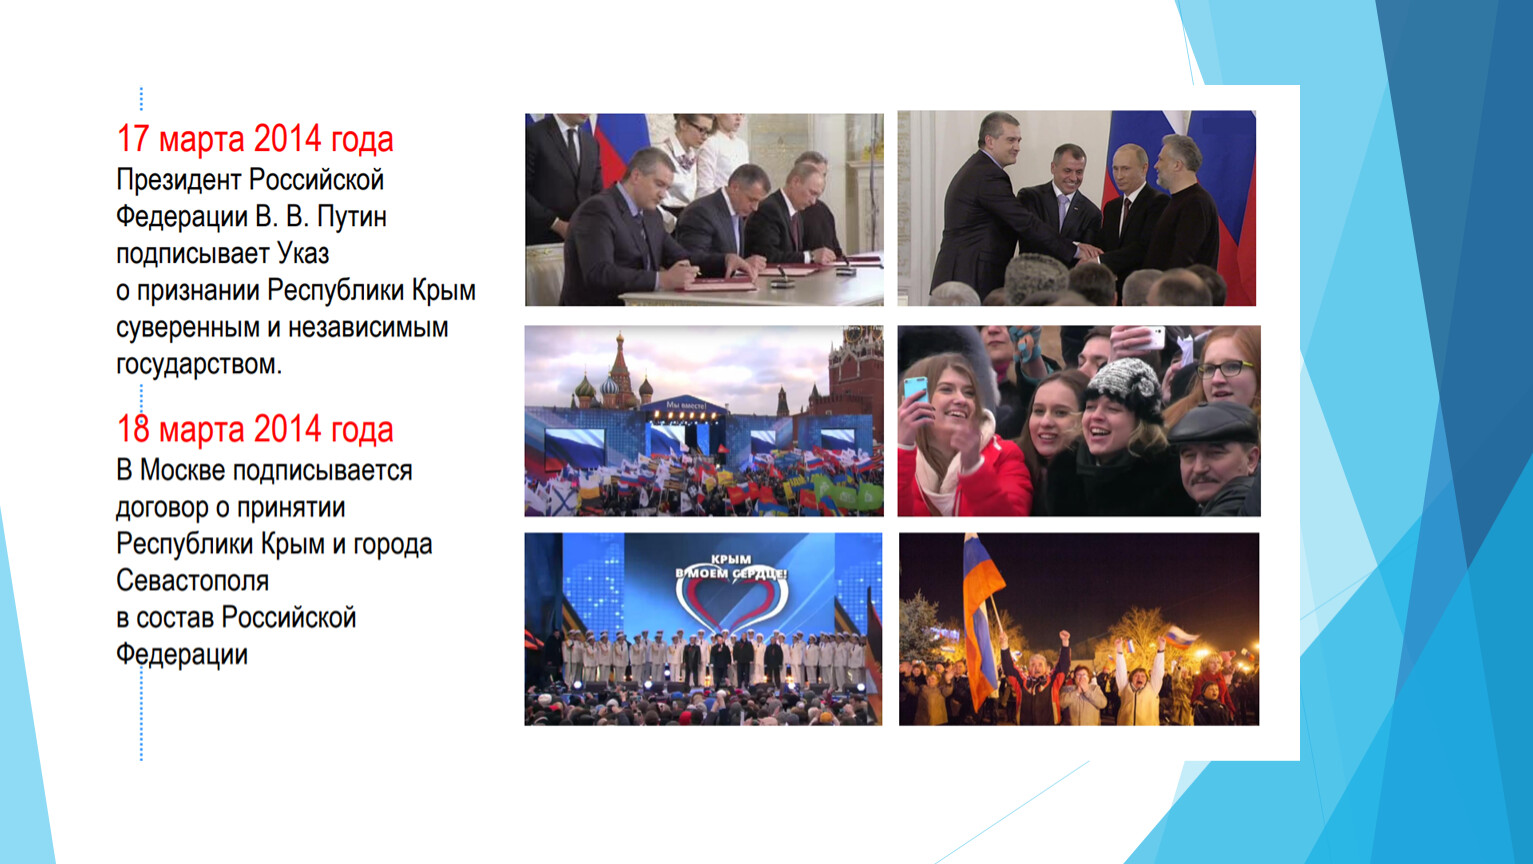 Крым наш разговоры о важном. День воссоединения Крыма с Россией разговор о важном. Крым навеки с Россией.